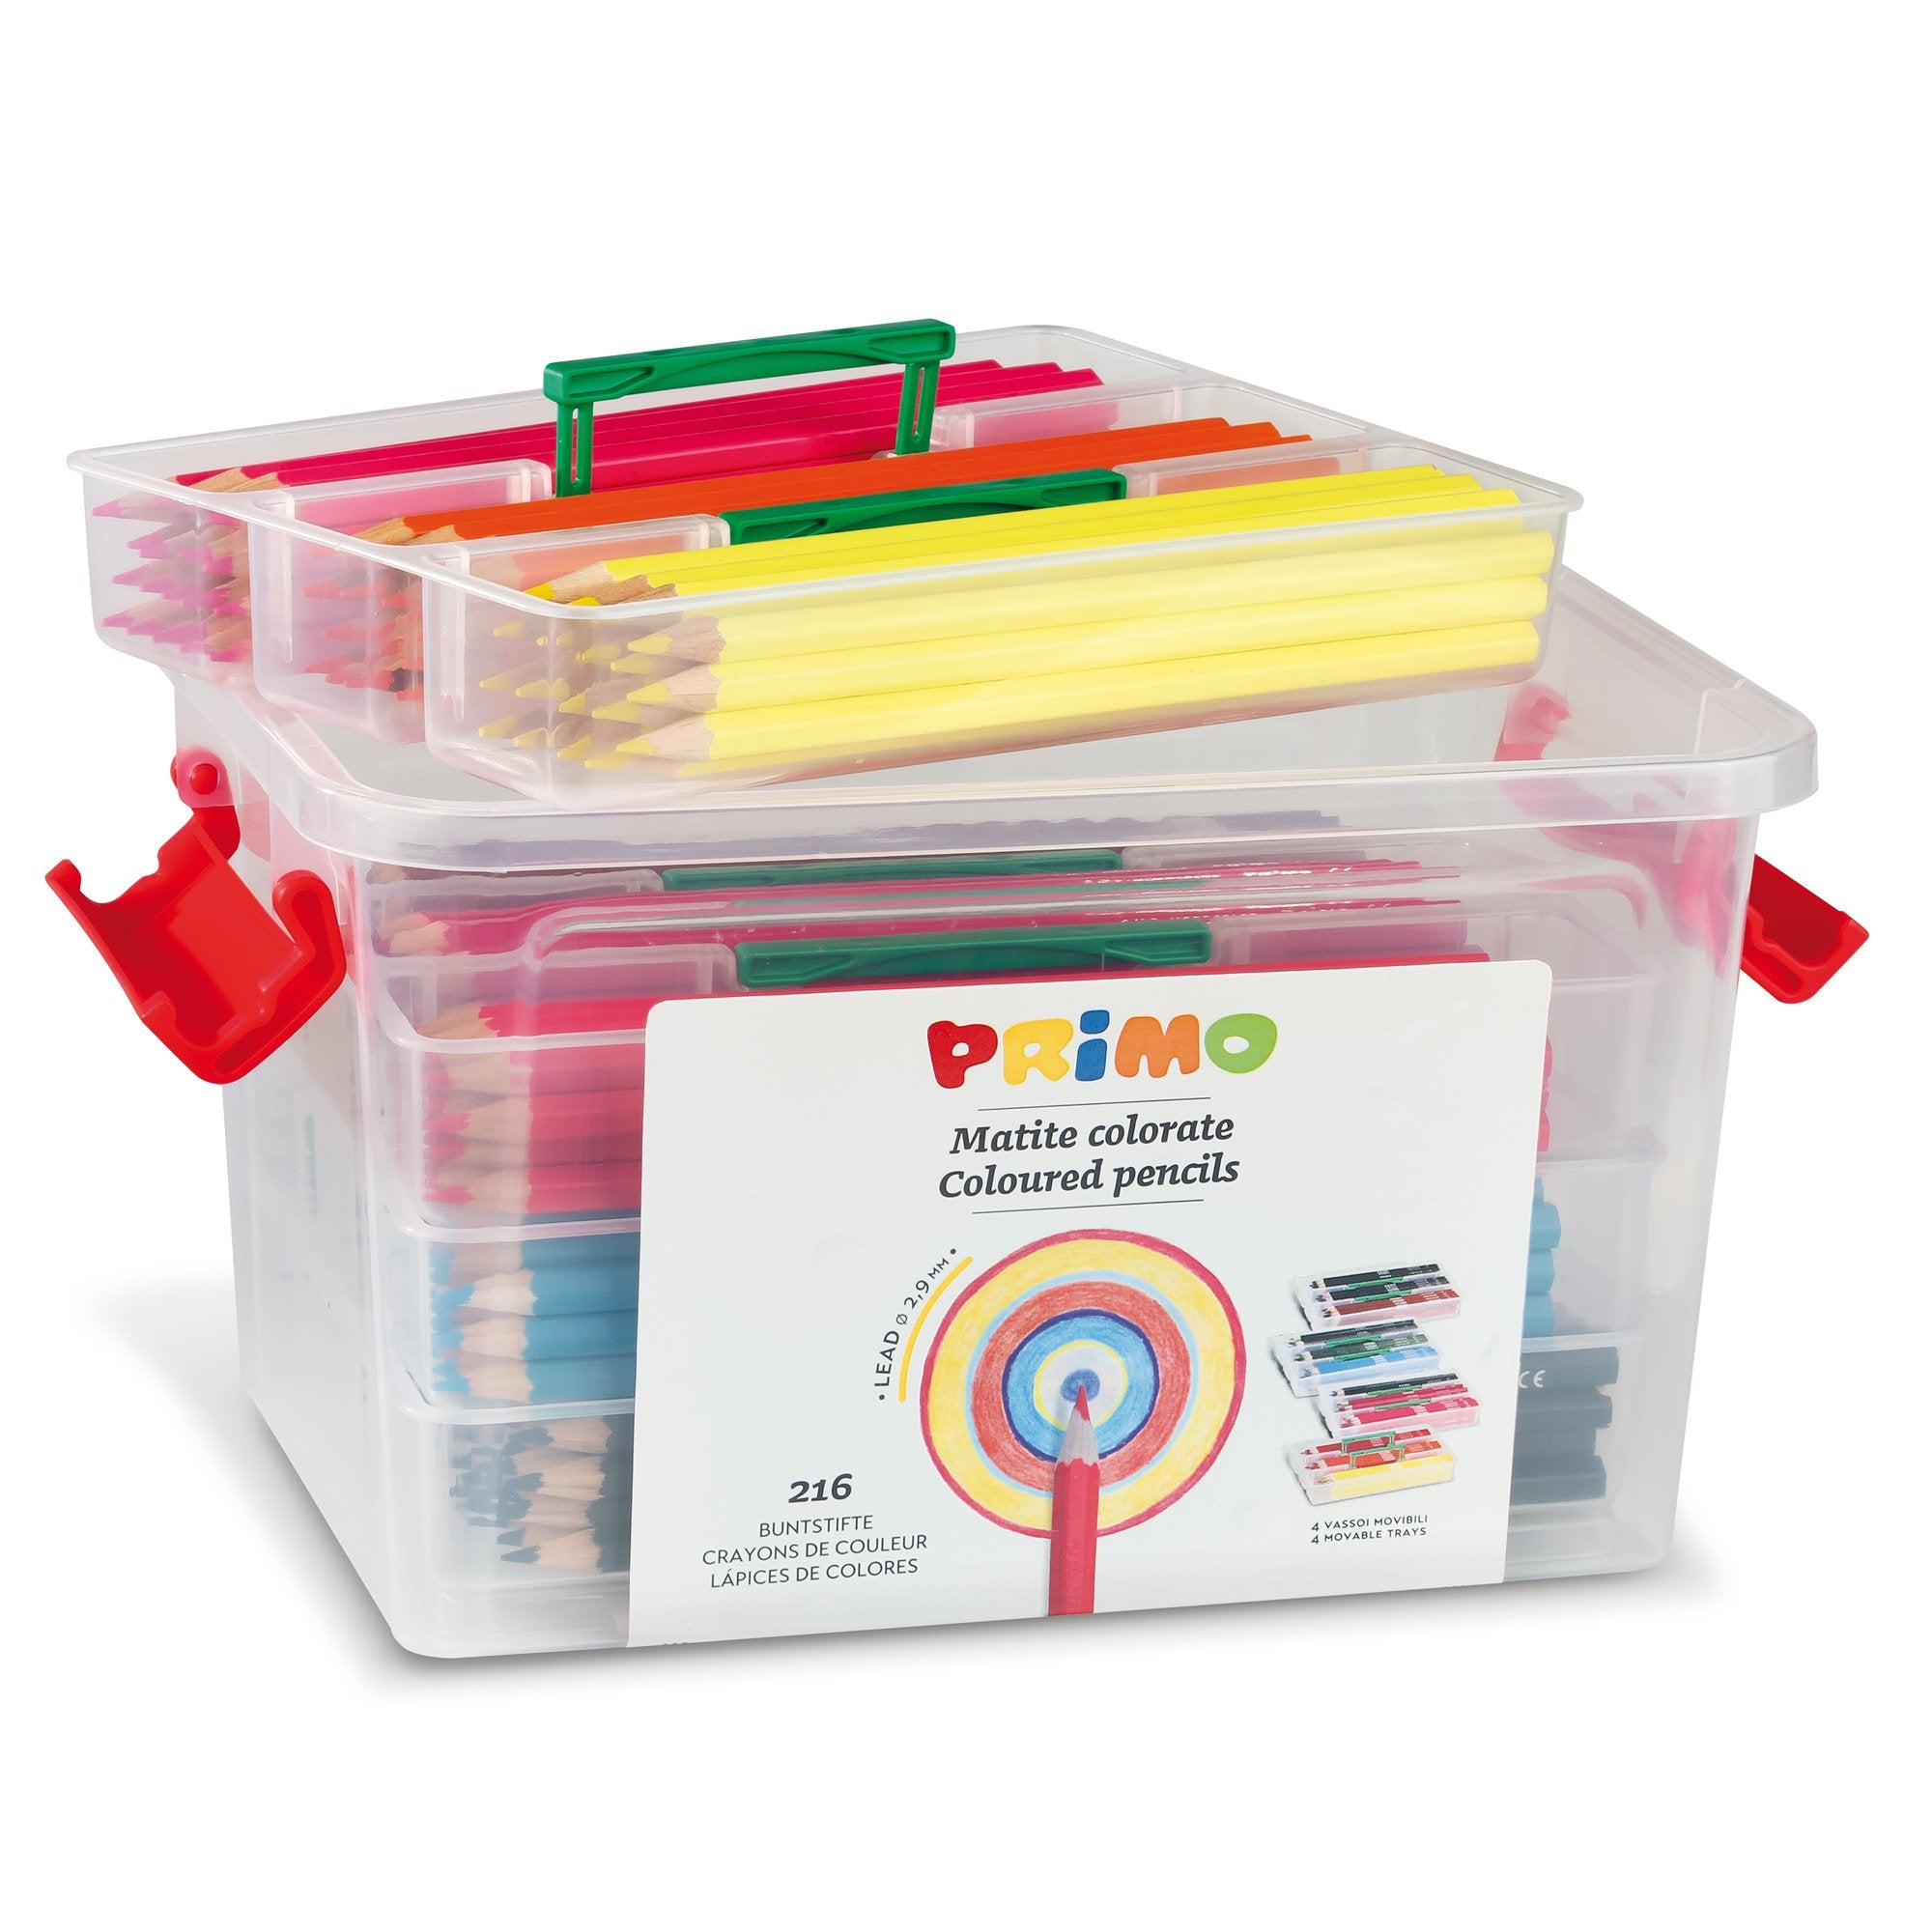 primo-morocolor-schoolbox-216-pastelli-colorati-100-fsc-12-colori-primo